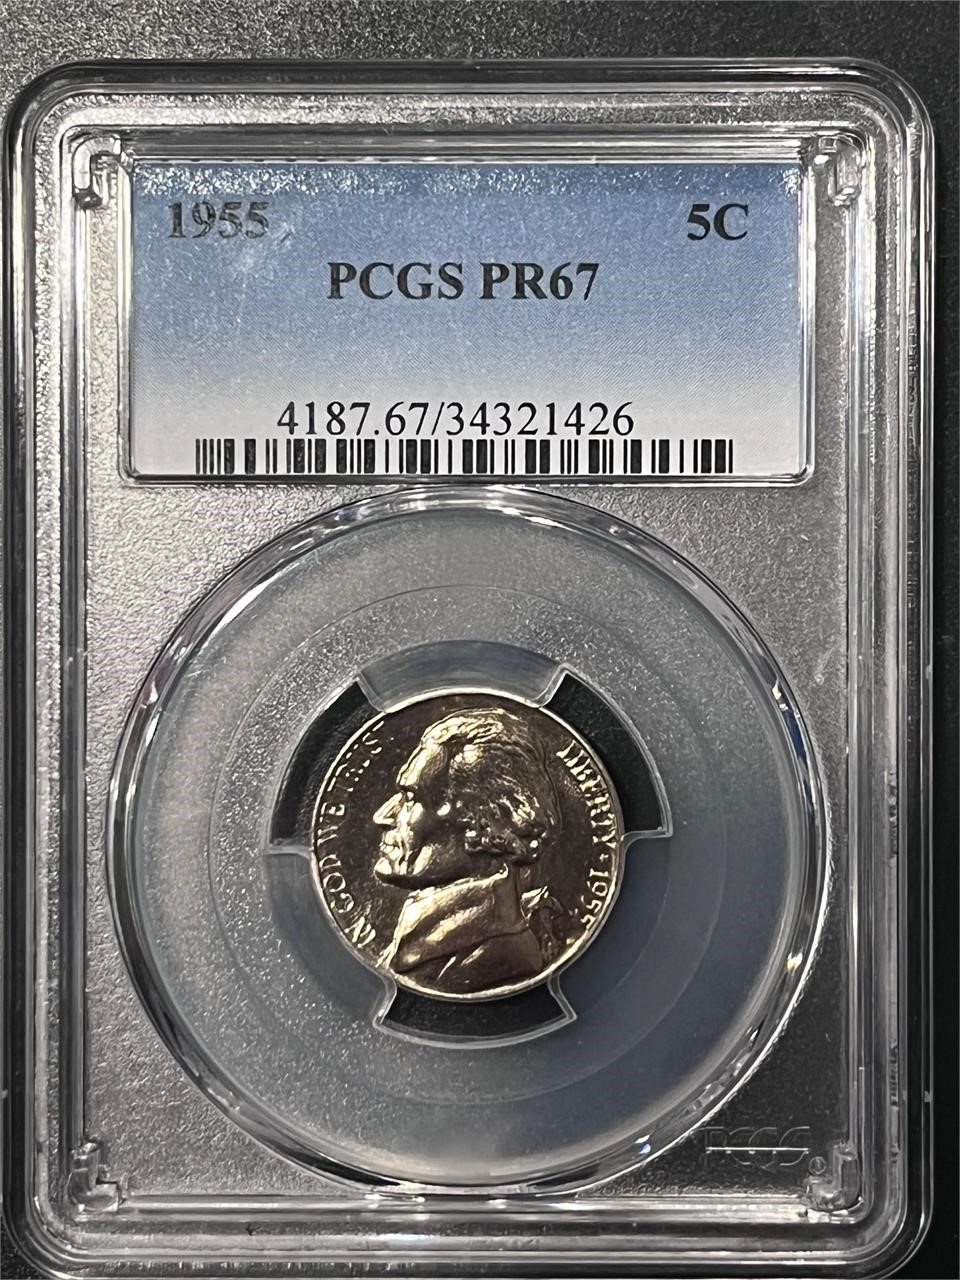 1955 Jefferson Nickel PCGS PR67